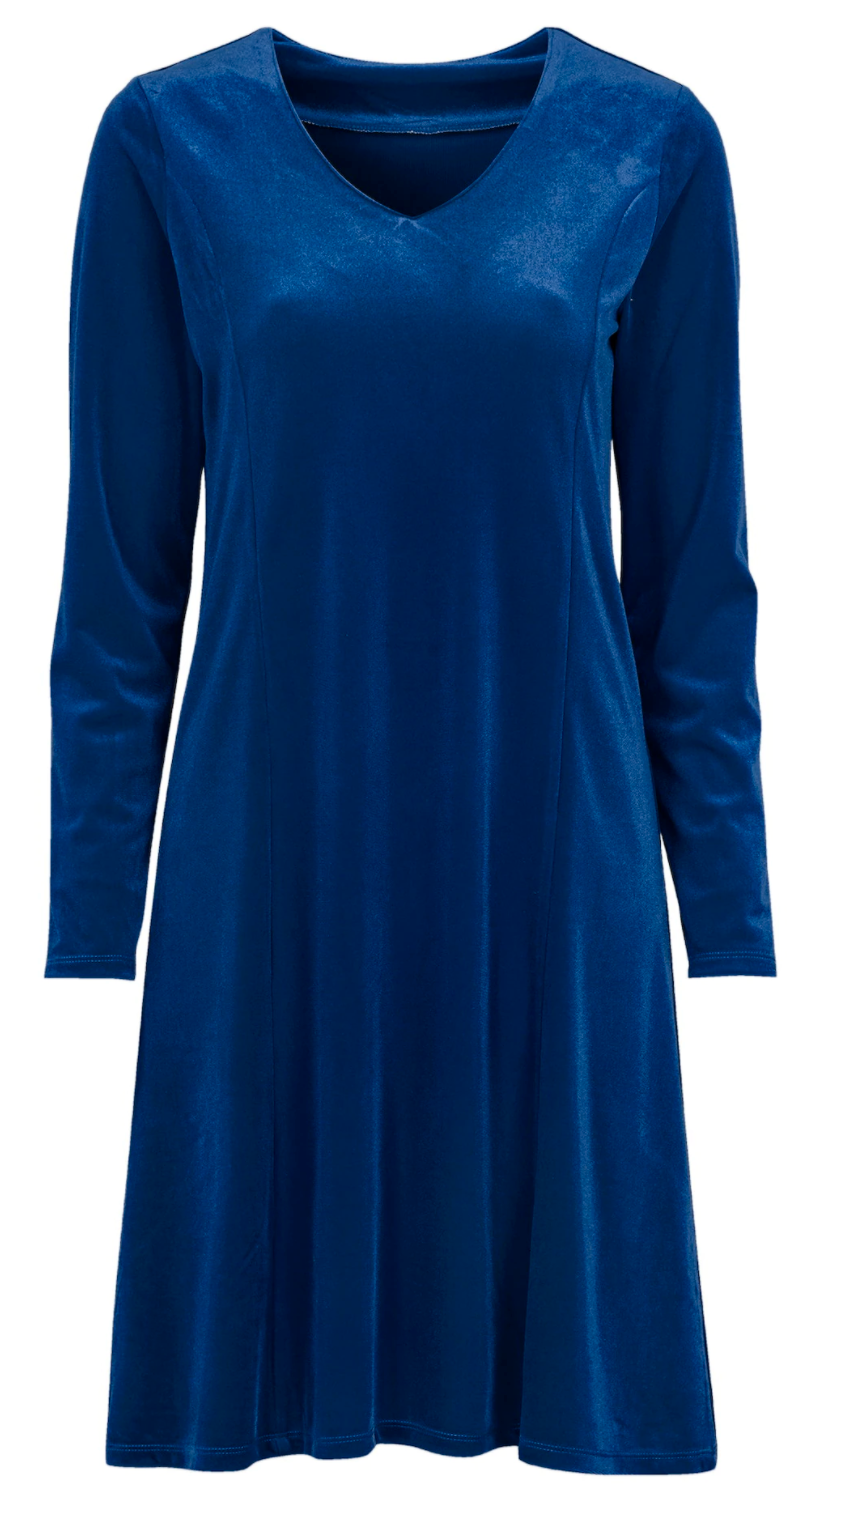 Midnattsblå sammetsklänning från Cellbes